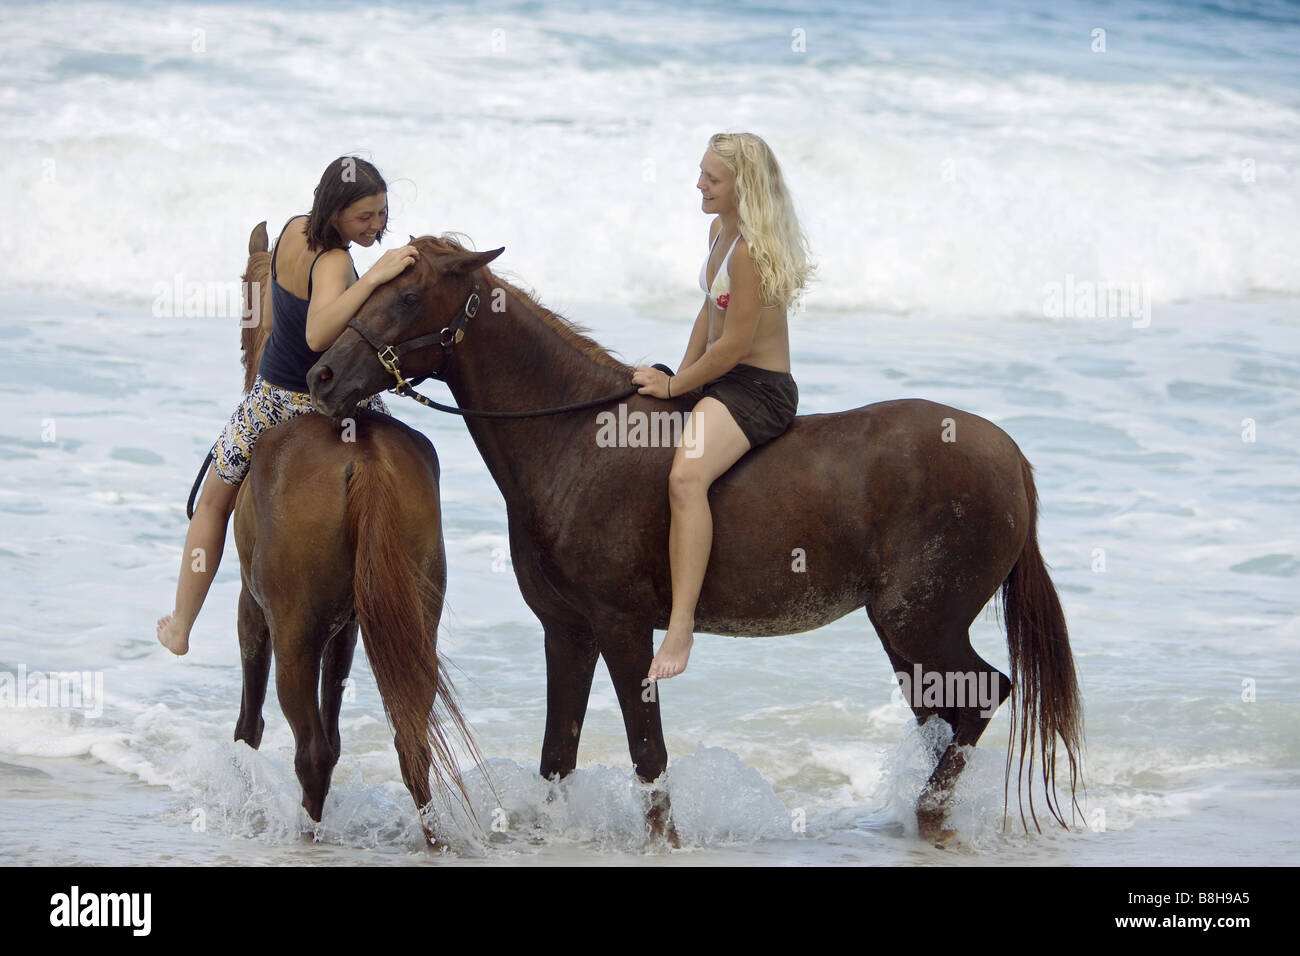 Deux femmes équitation sur des chevaux arabes dans l'eau Banque D'Images